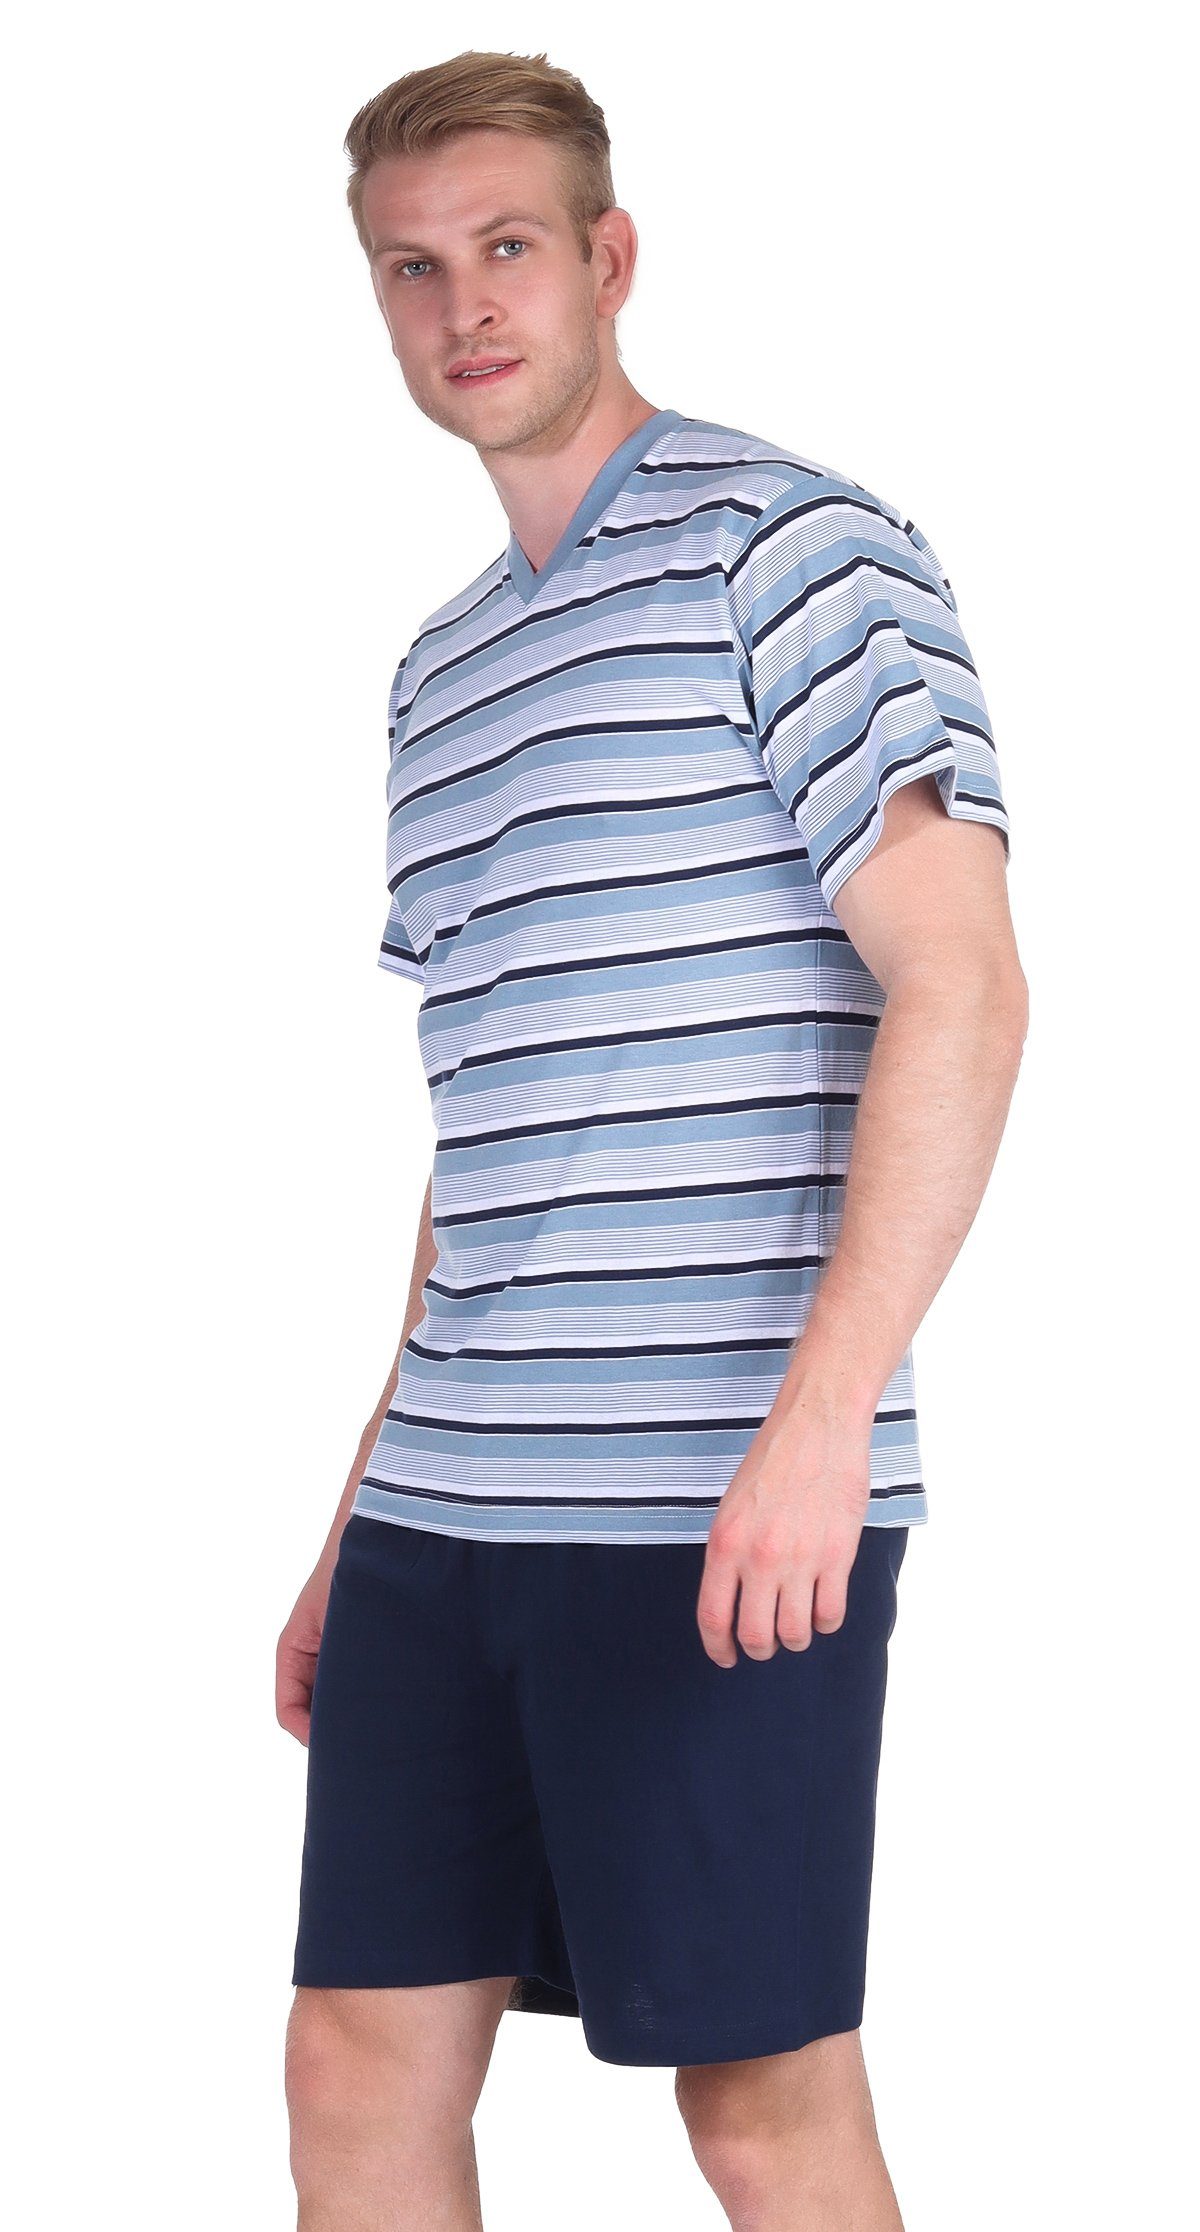 Moonline Shorty Herren Schlafanzug 100% Shorty Kurzarm V-Ausschnitt Single-Jersey mit Baumwolle Blau